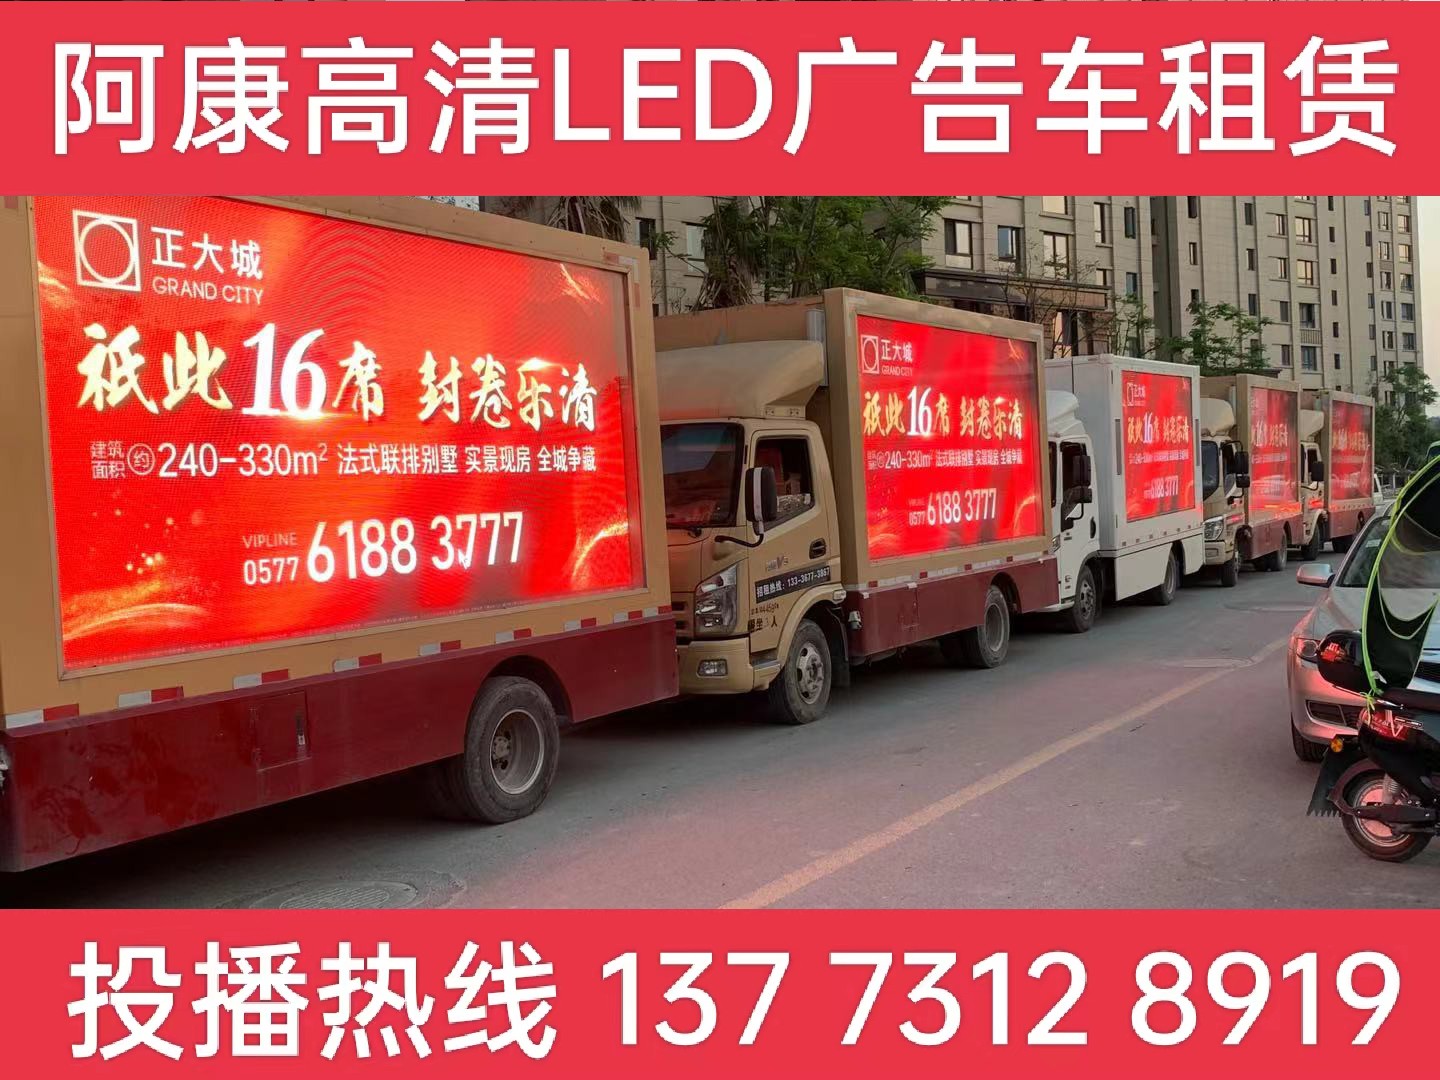 天长LED广告车出租